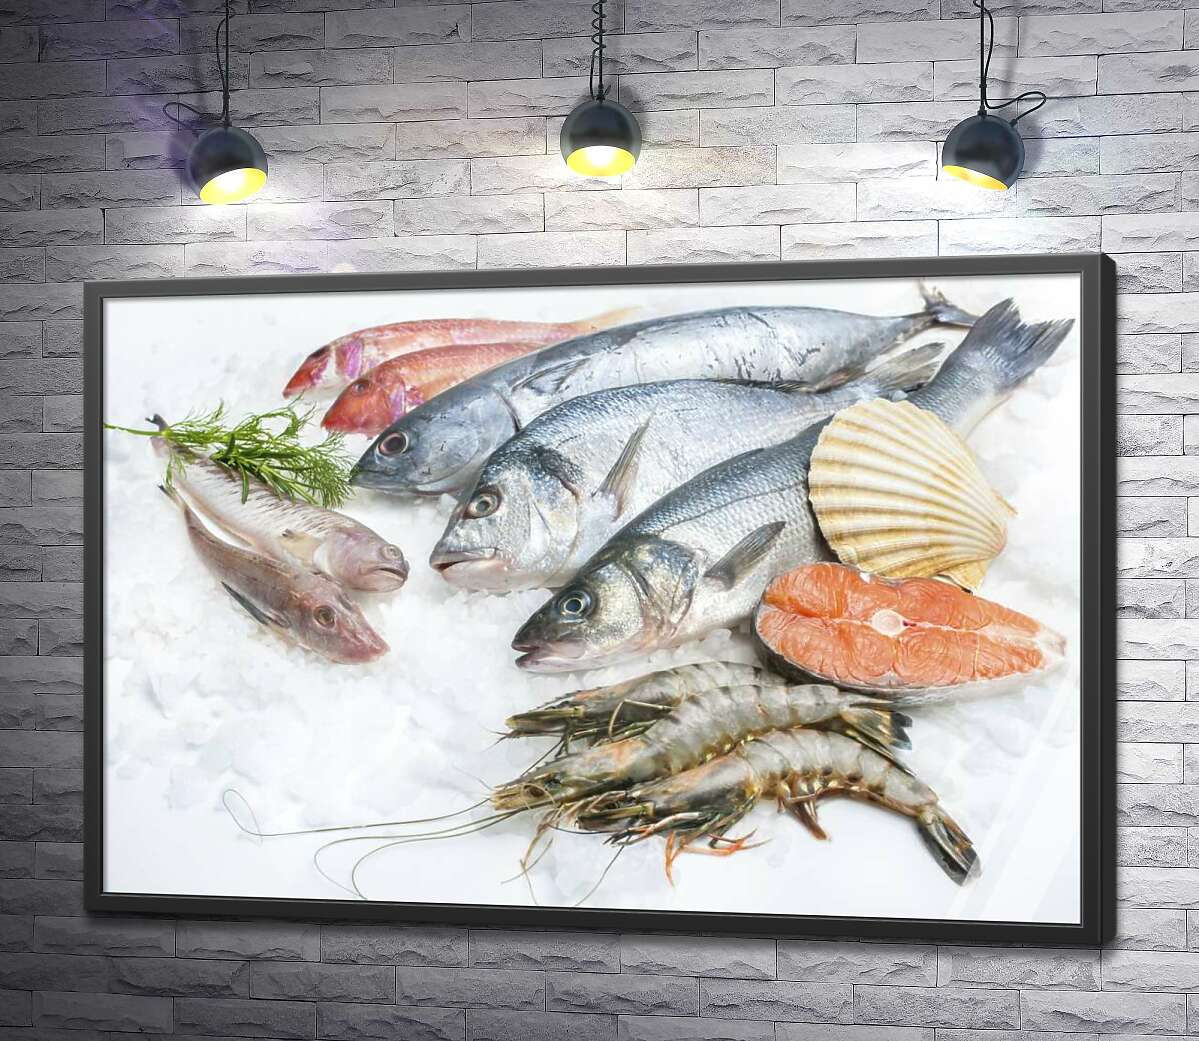 постер Разнообразие морской рыбы и креветок на холоде льда